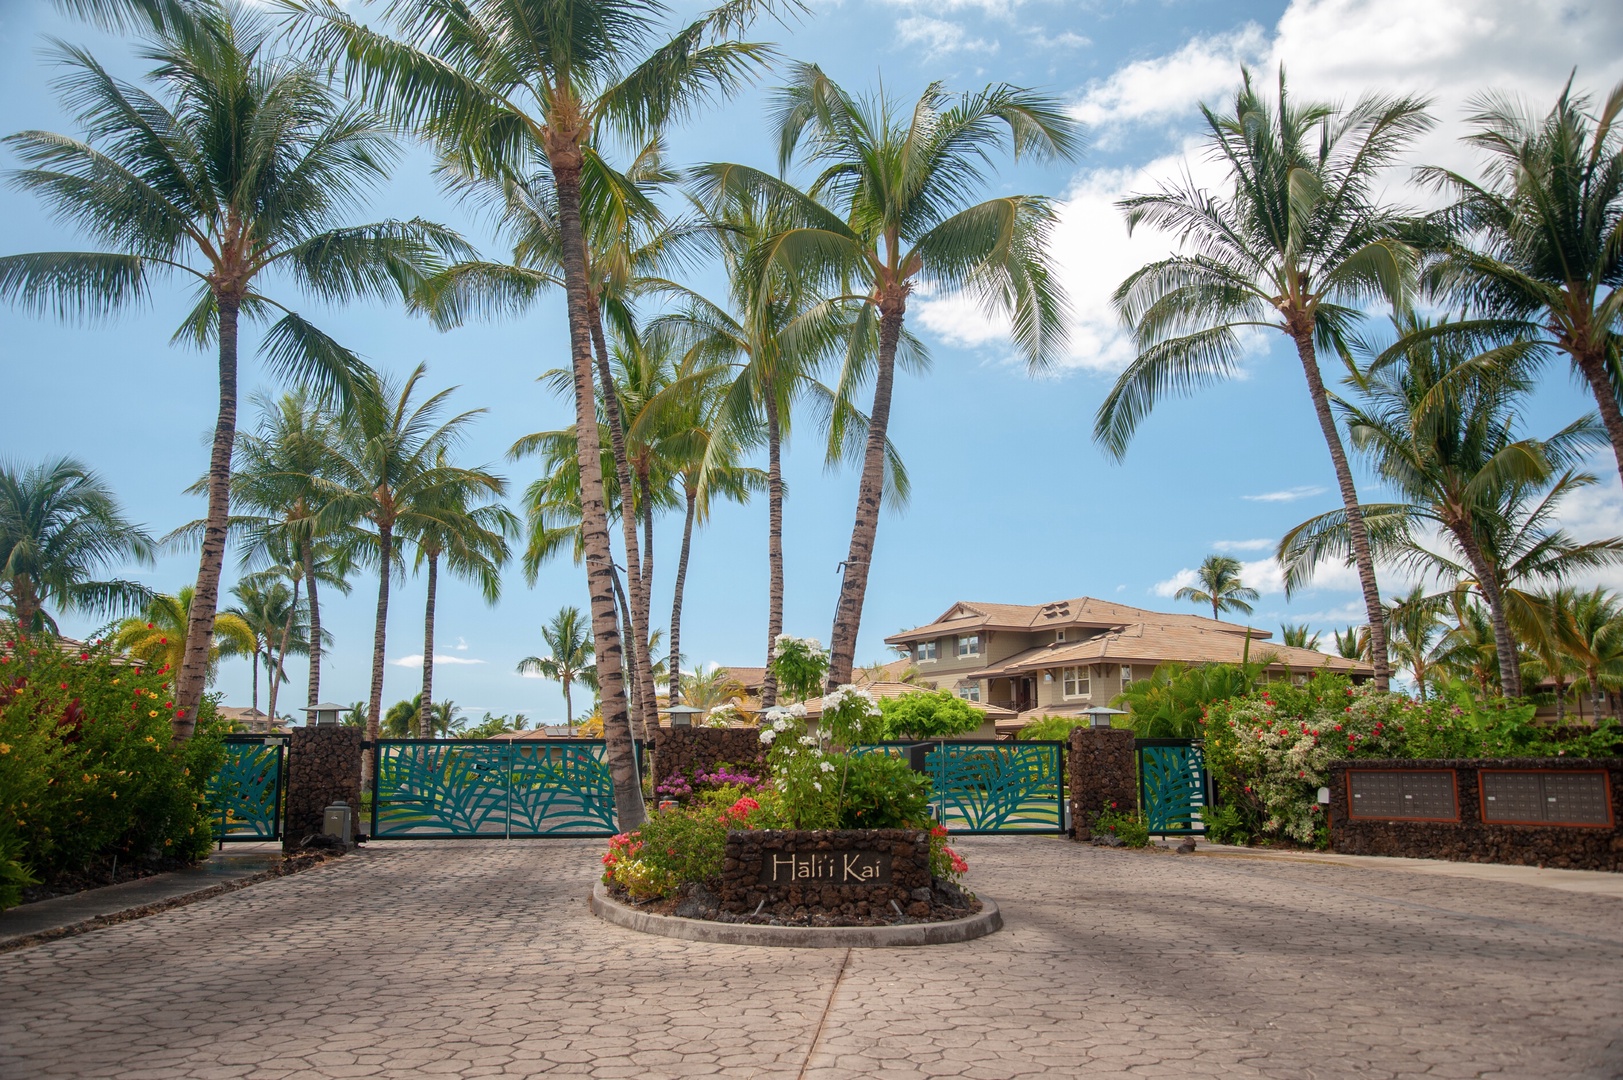 Waikoloa Vacation Rentals, 3BD Hali'i Kai (12G) at Waikoloa Resort - Hali'i Kai Resort's private & gated entrance